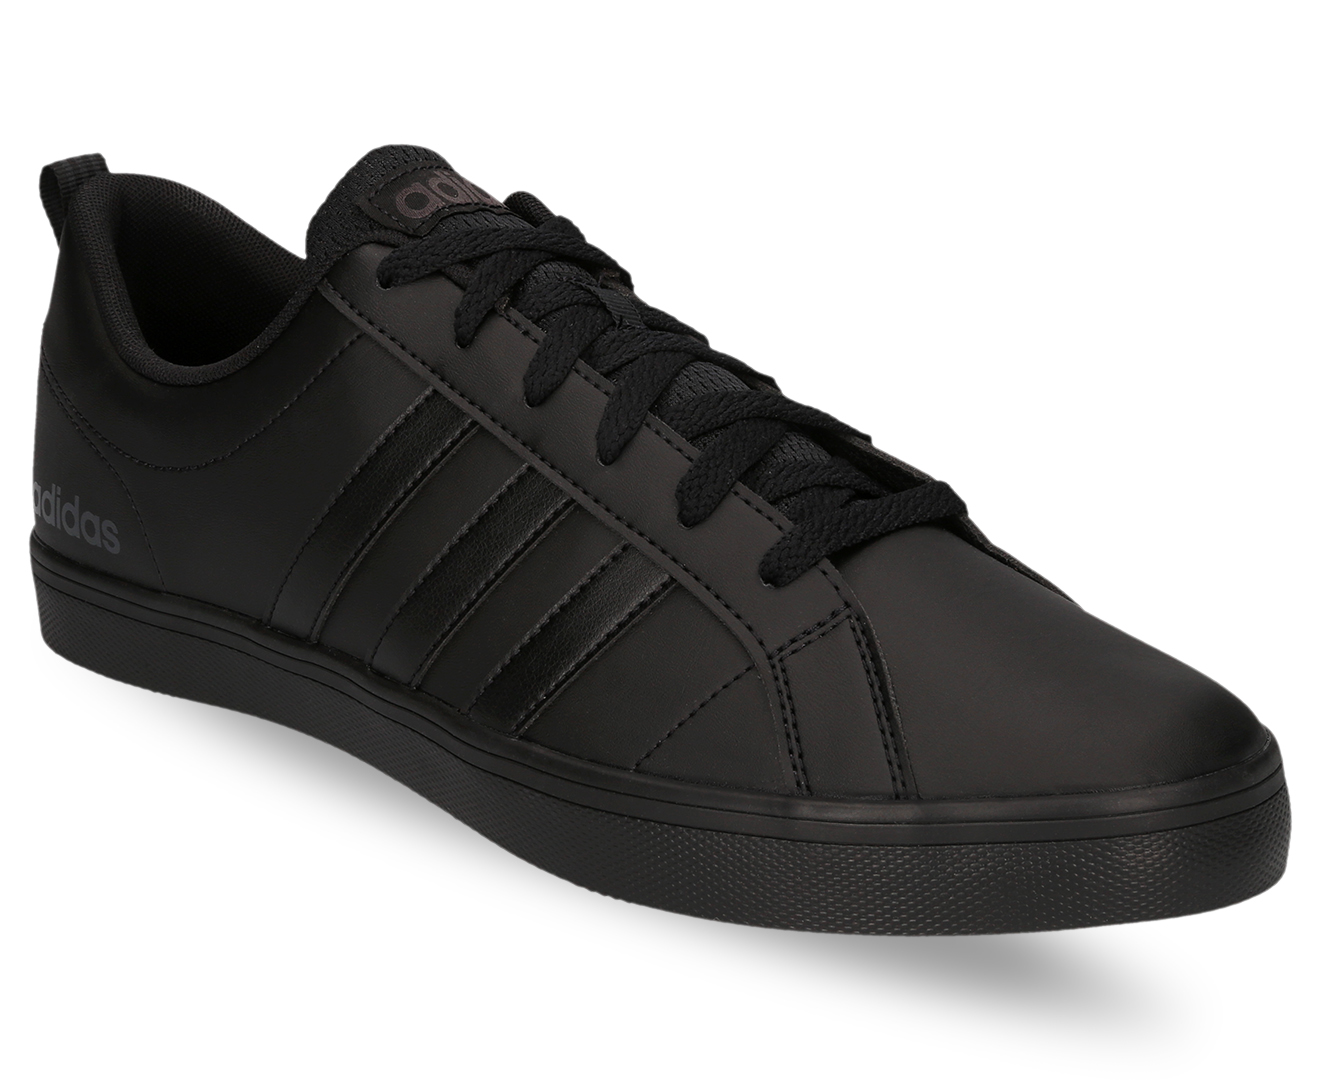 Adidas Men's VS Pace Shoe - Core Black/Carbon | Catch.com.au